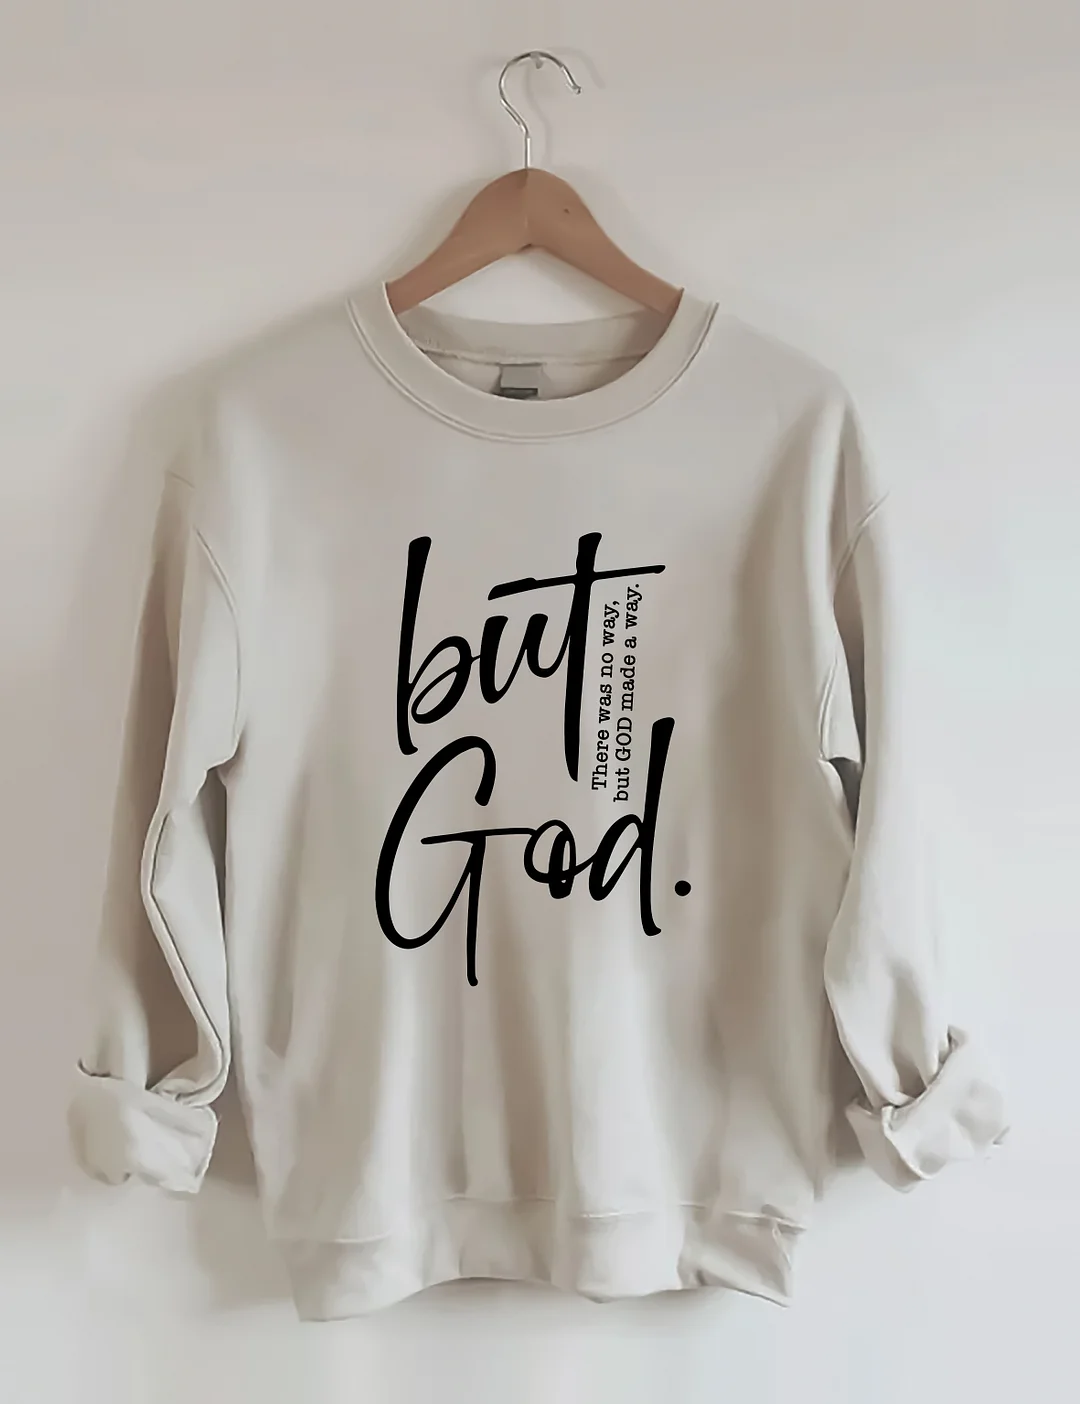 But God Sweatshirt